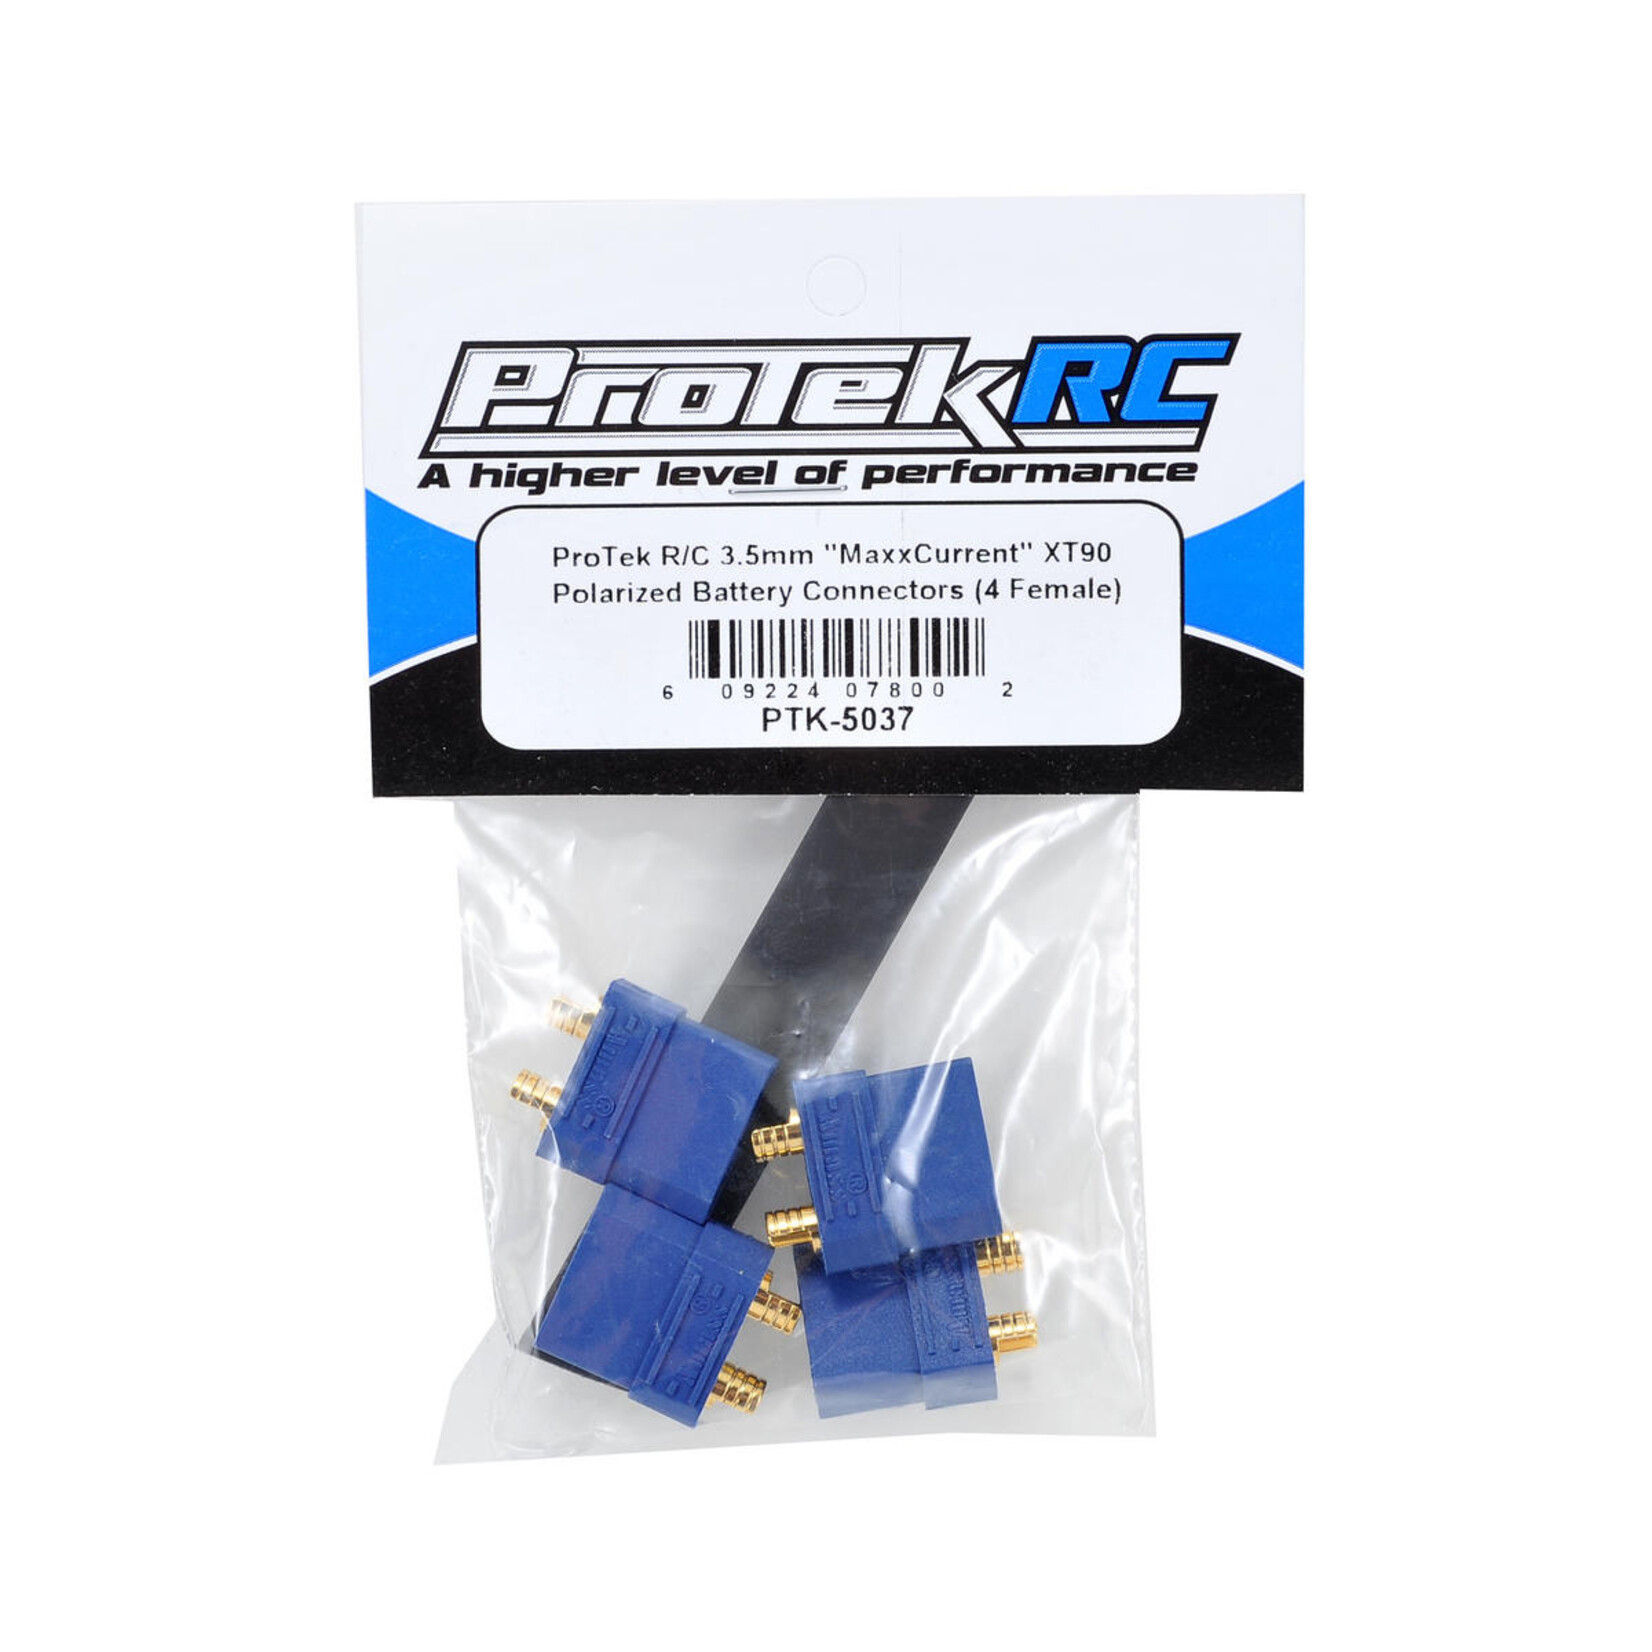 ProTek RC ProTek RC 4.5mm "TruCurrent" XT90 Polarized Battery Connectors (4 Female) #PTK-5037